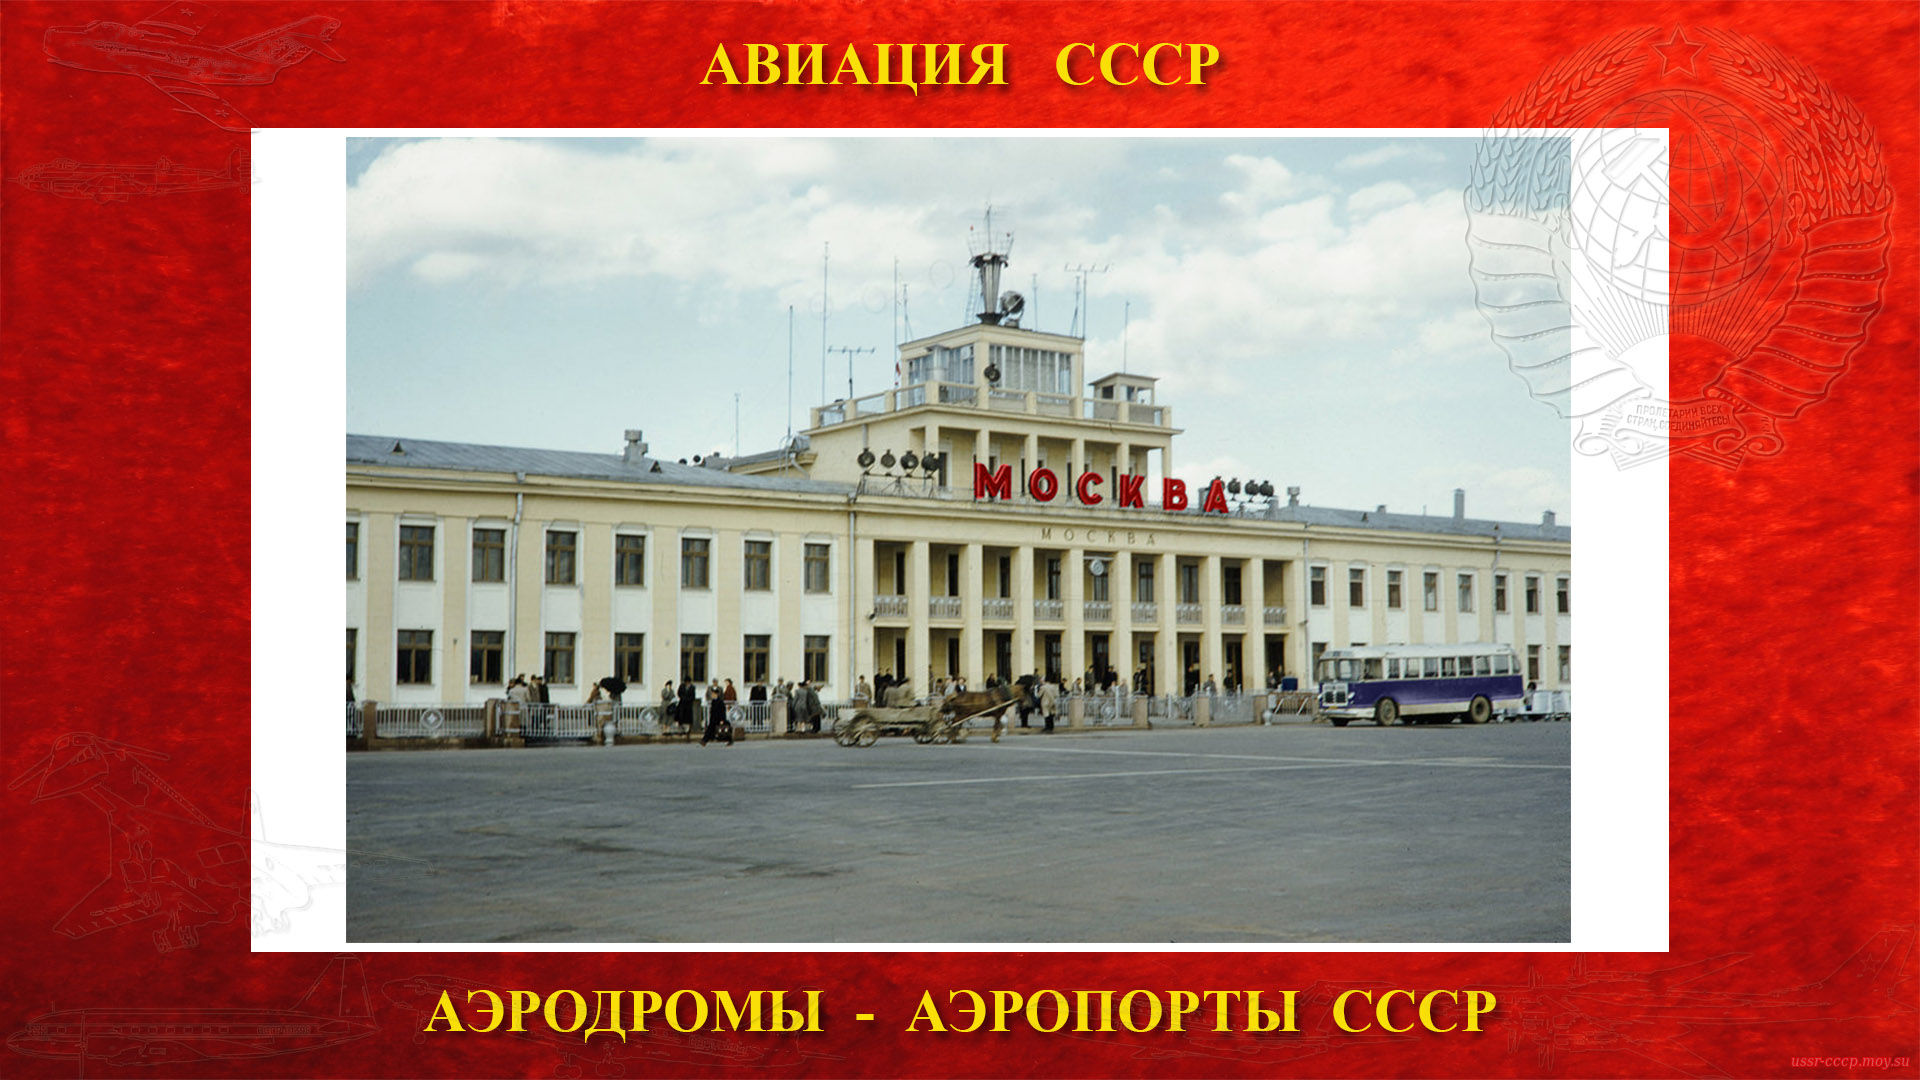 Аэропорт Внуково — Международный аэропорт союзного значения